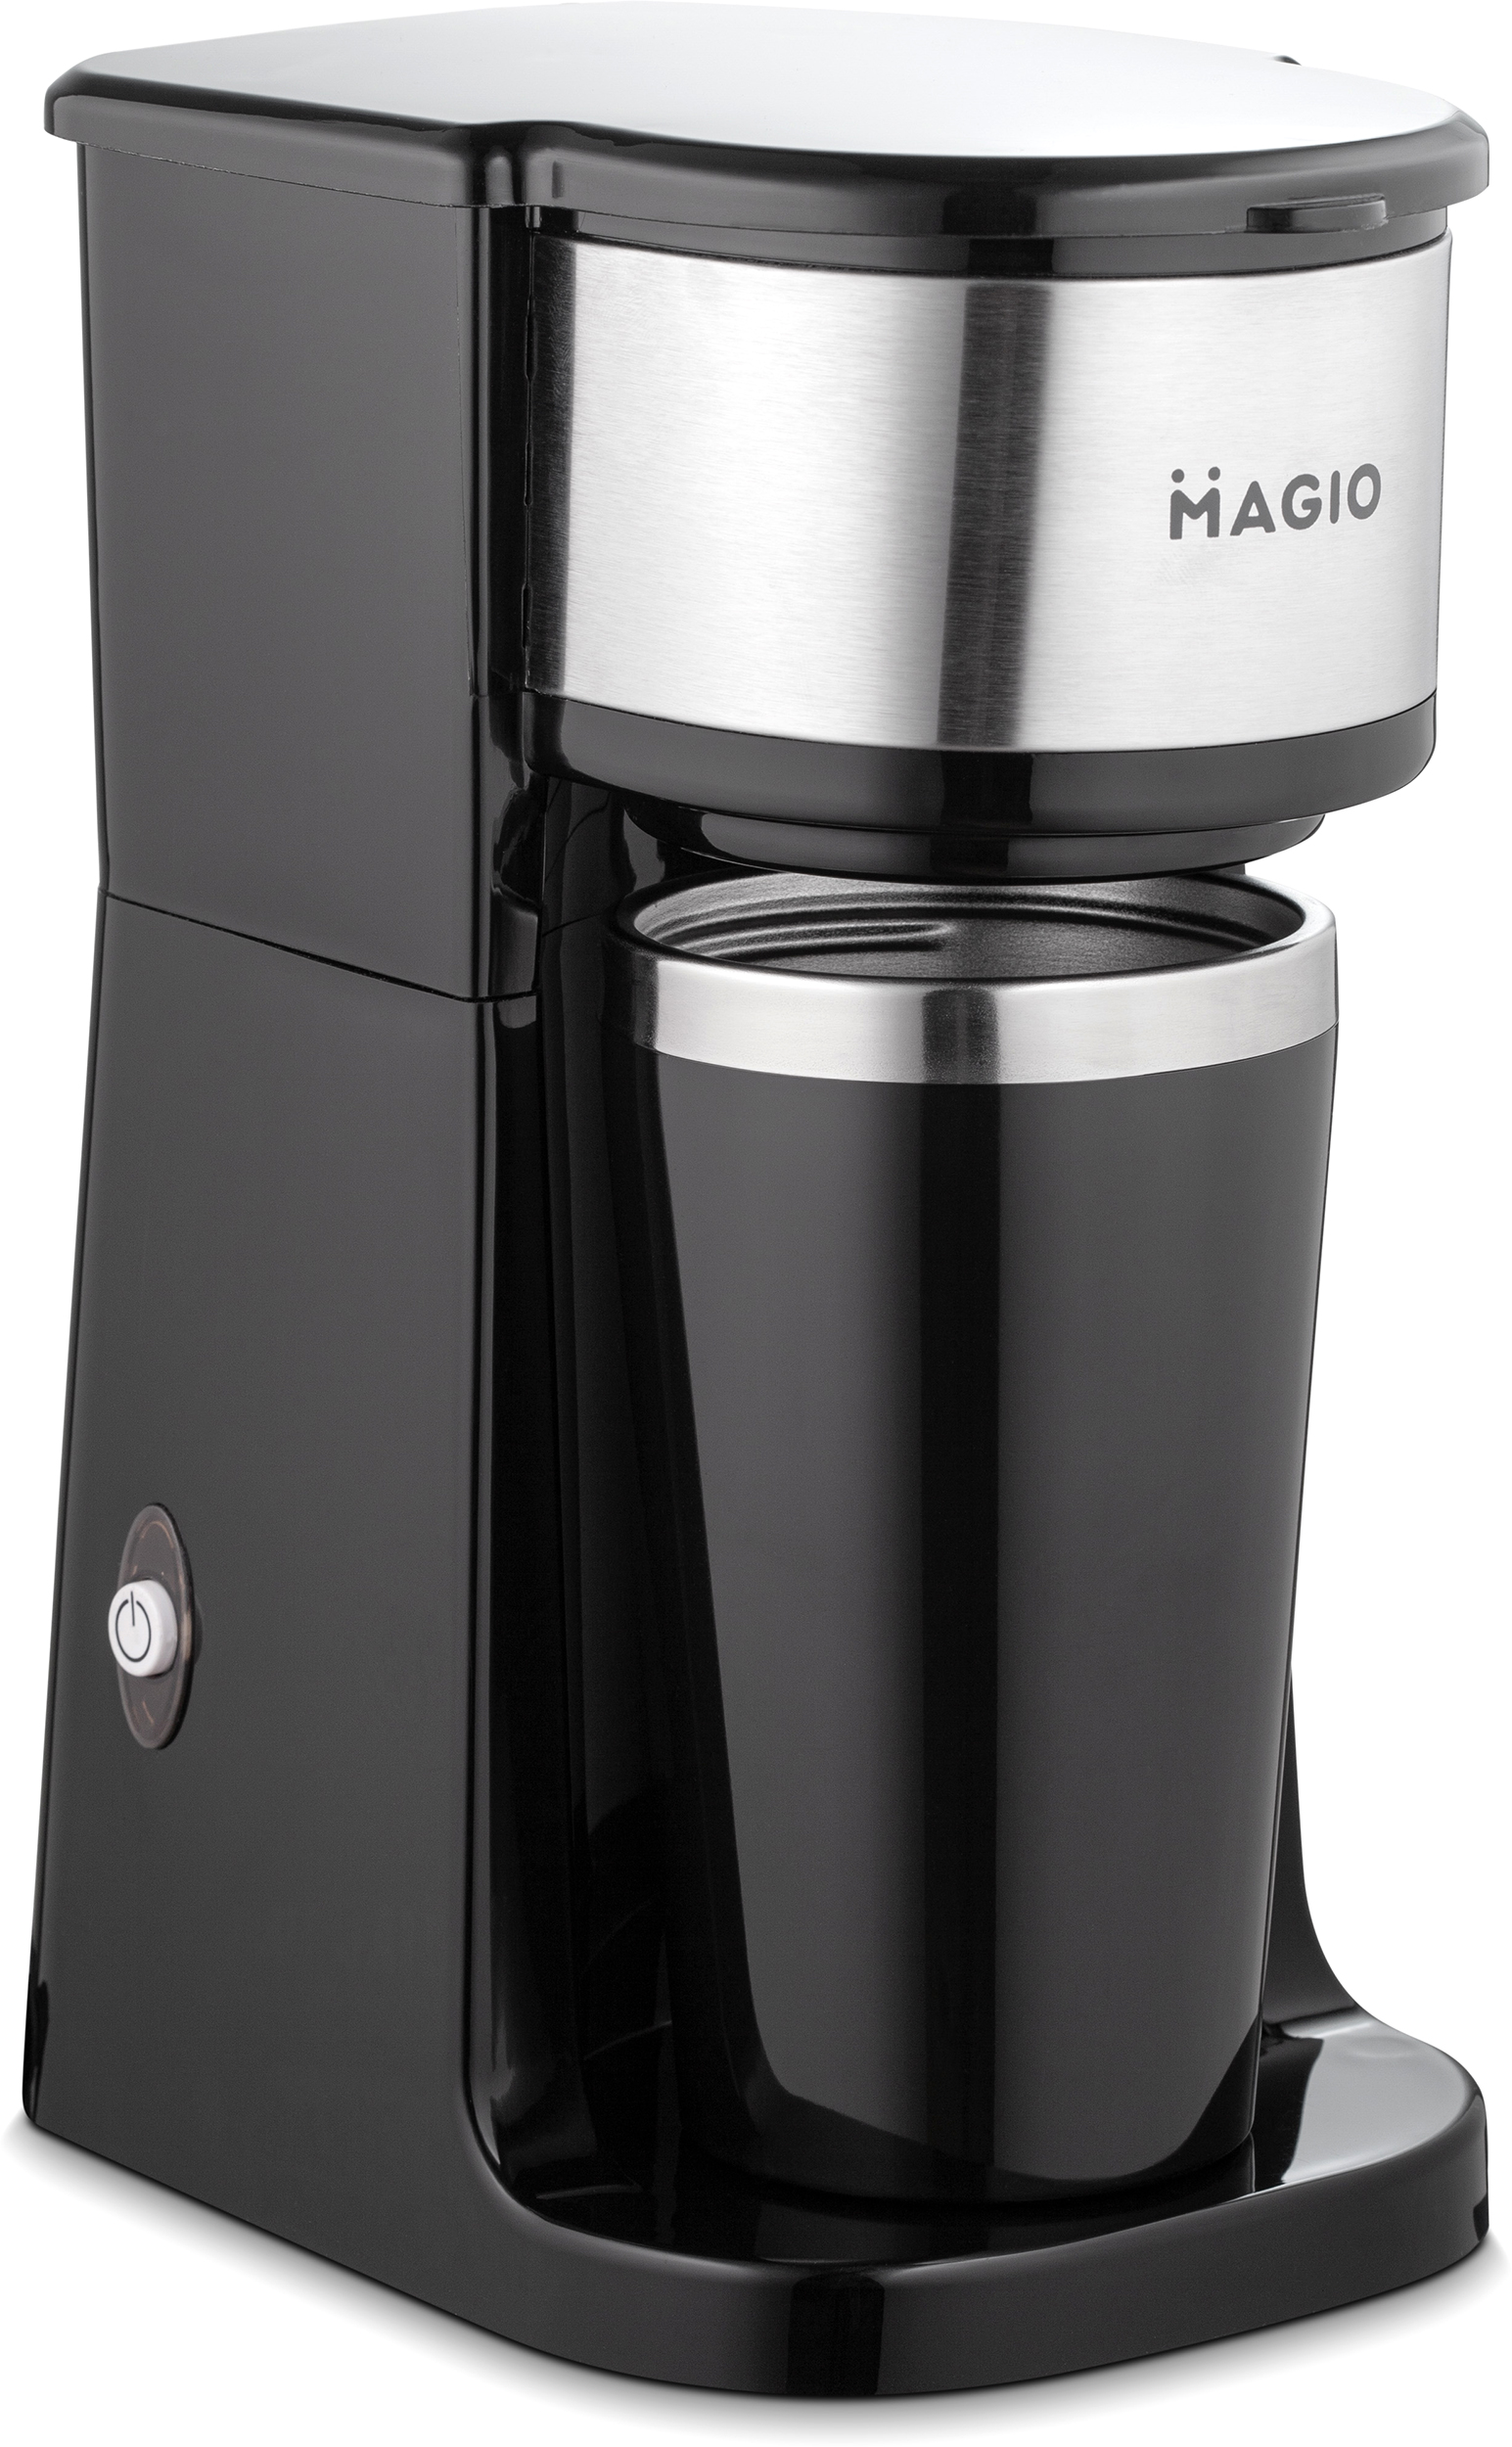 Характеристики кофеварка Magio MG-449